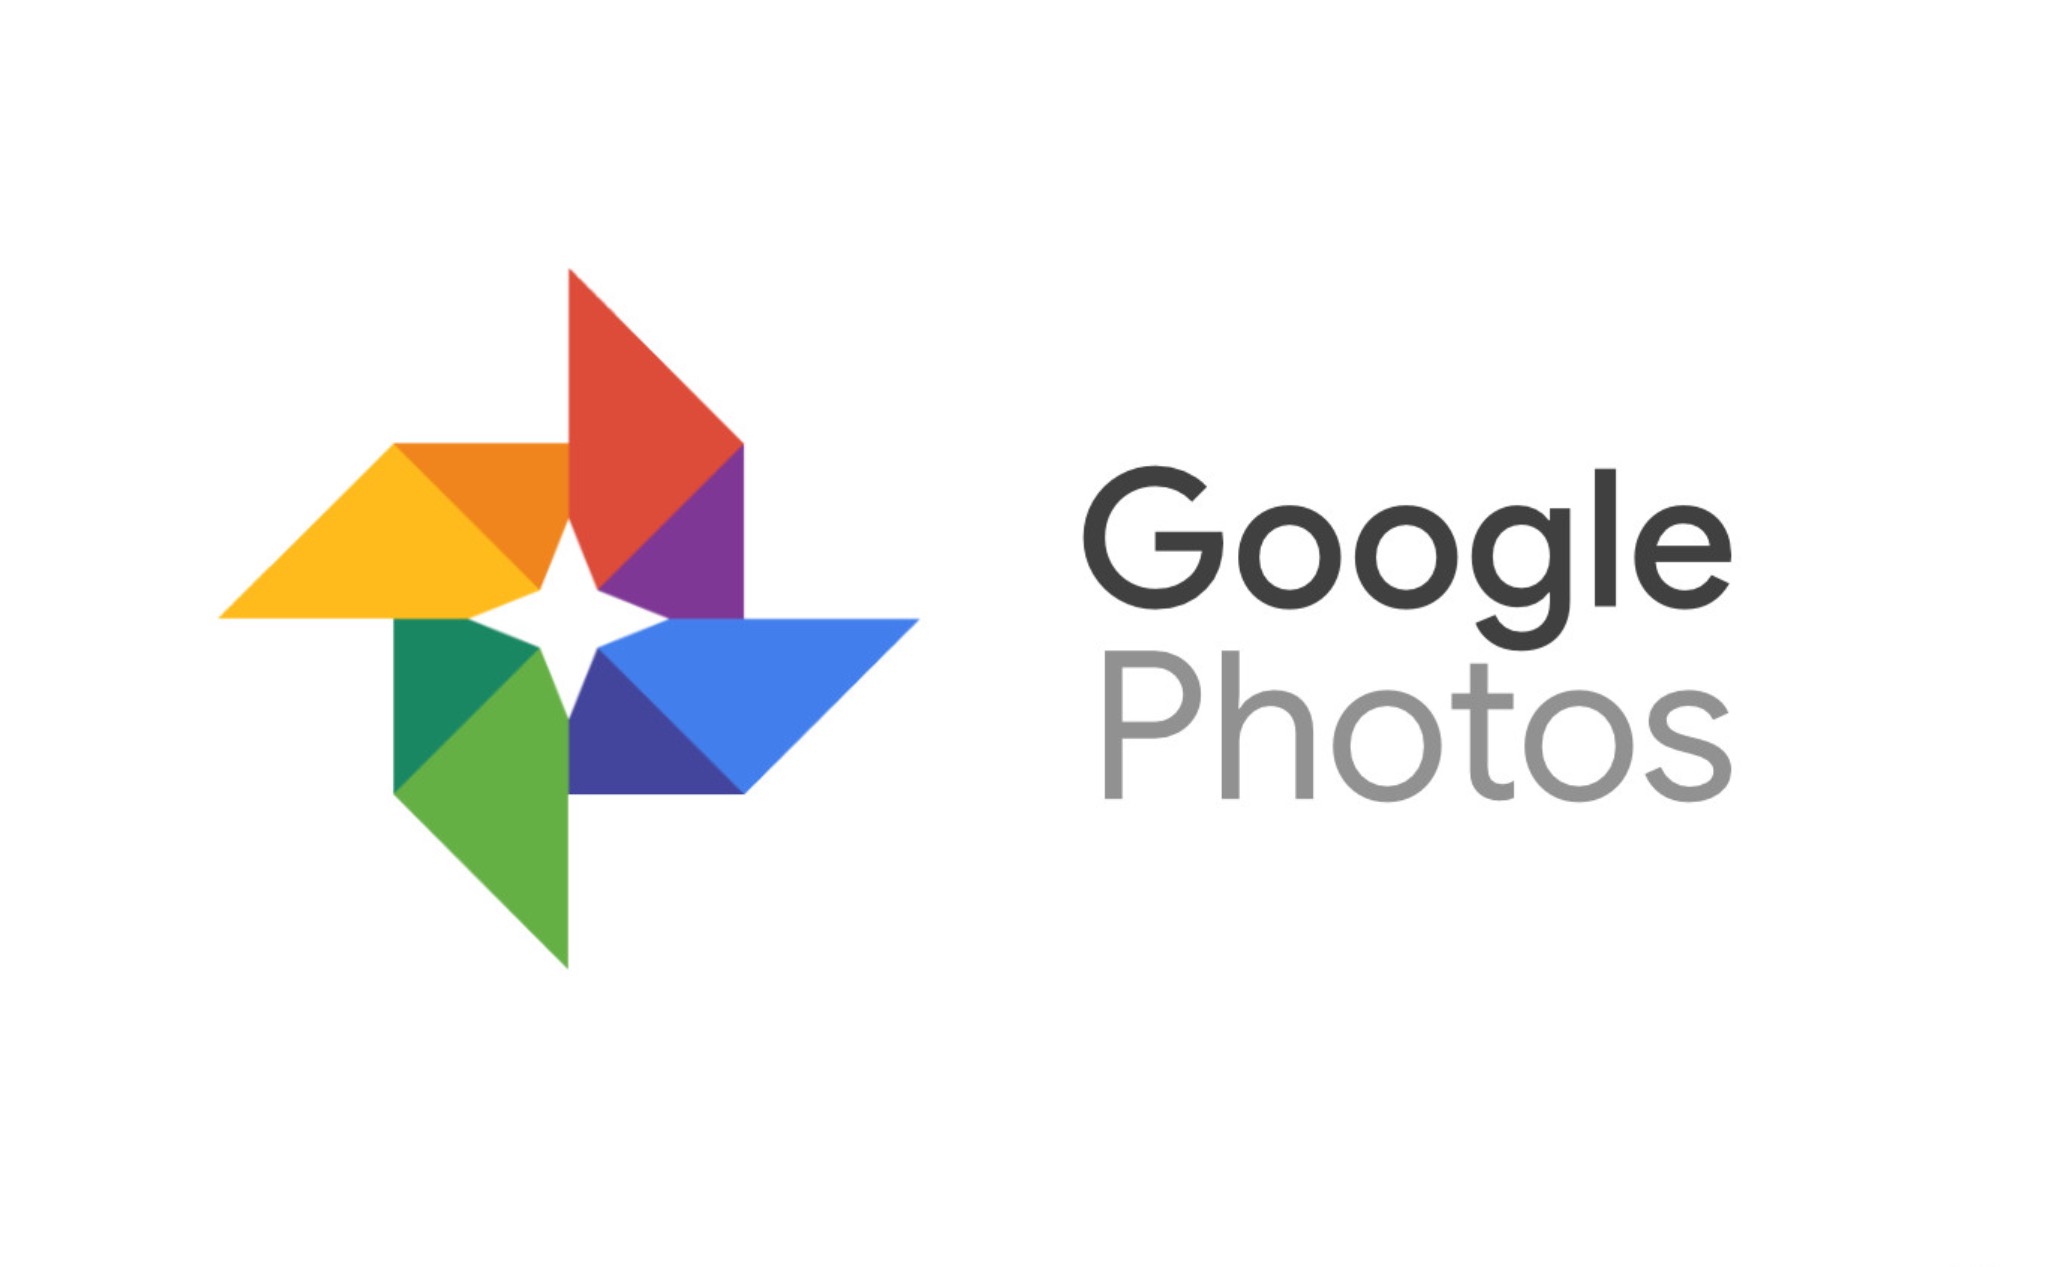 Facebook sẽ cho phép chuyển hình ảnh sang Google Photos